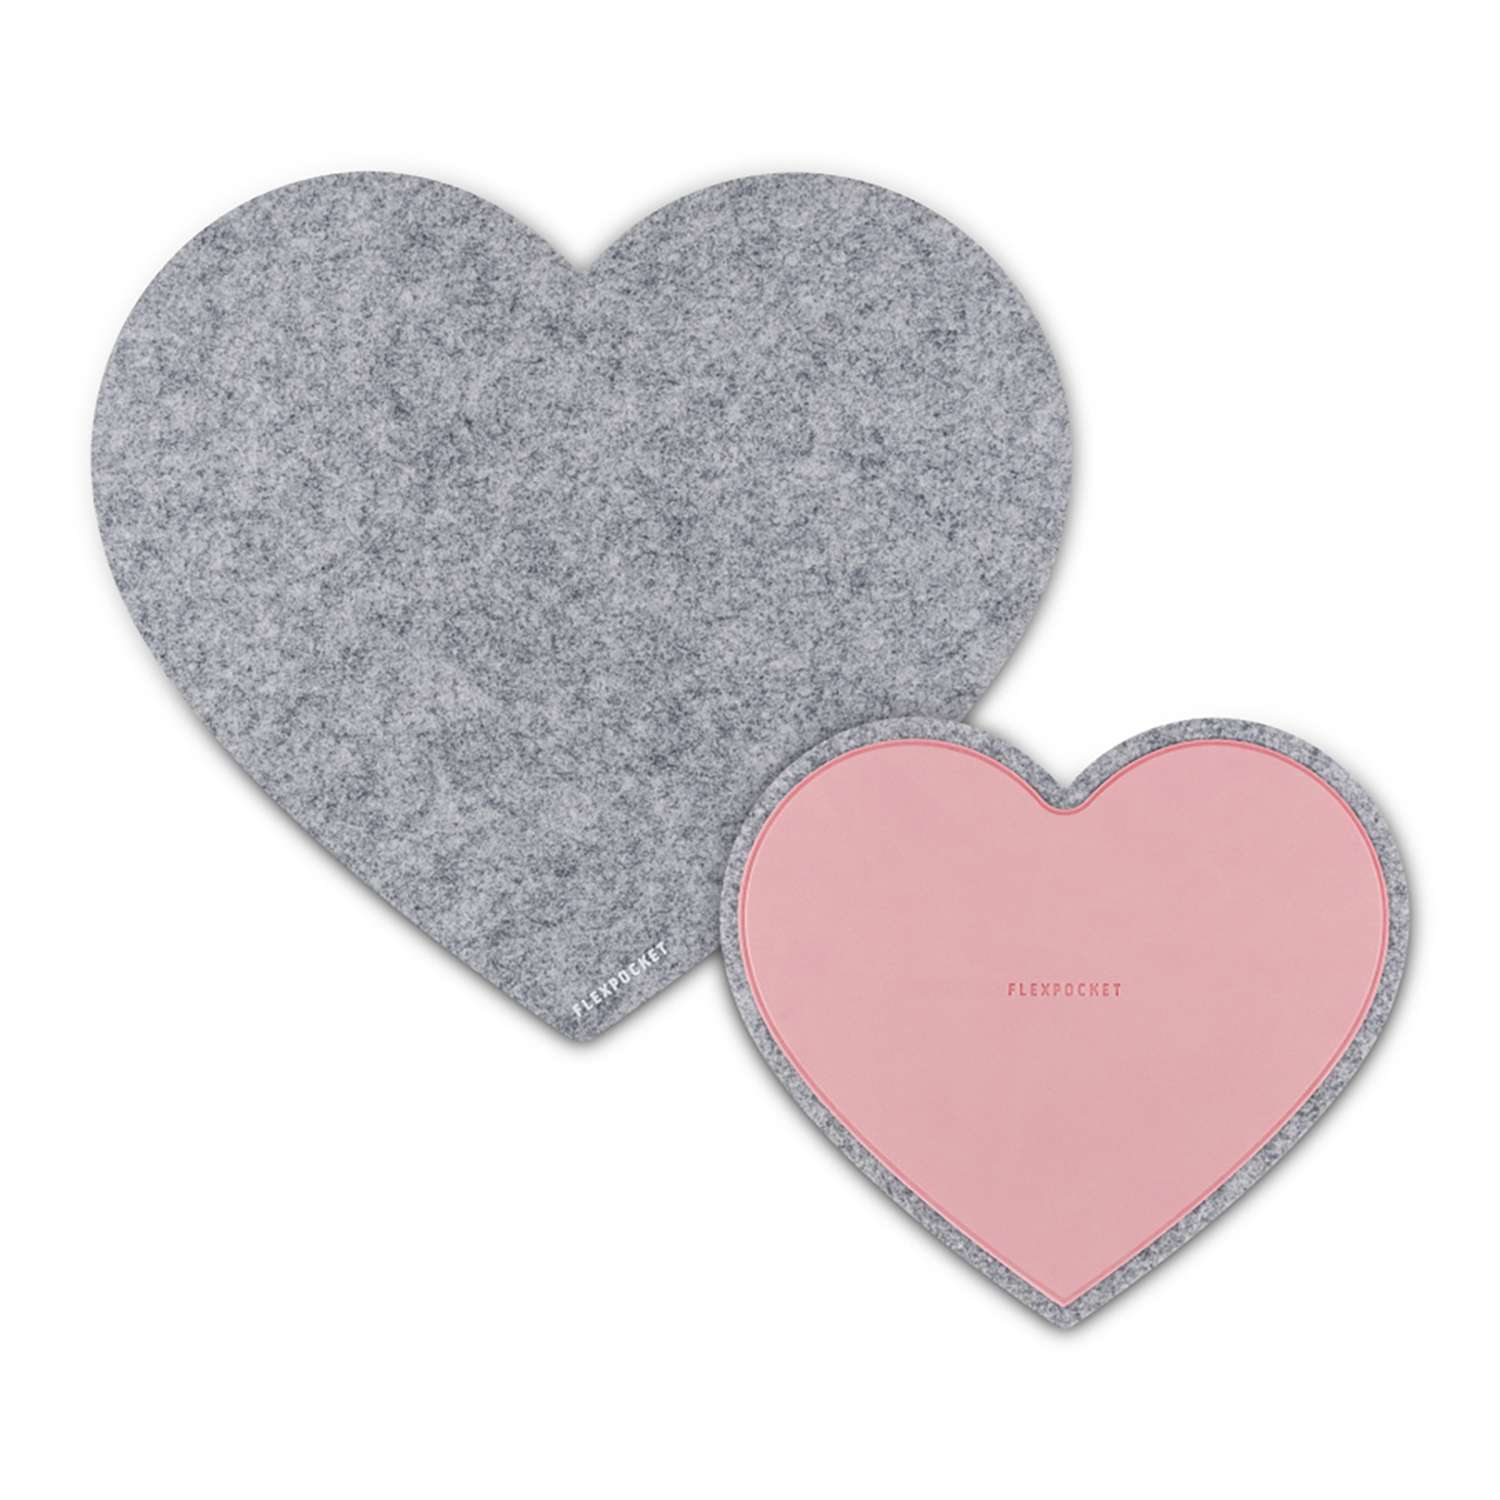 Настольный коврик Flexpocket для мыши в виде сердца с подставкой под кружку светло-серый 2 шт комплект - фото 1